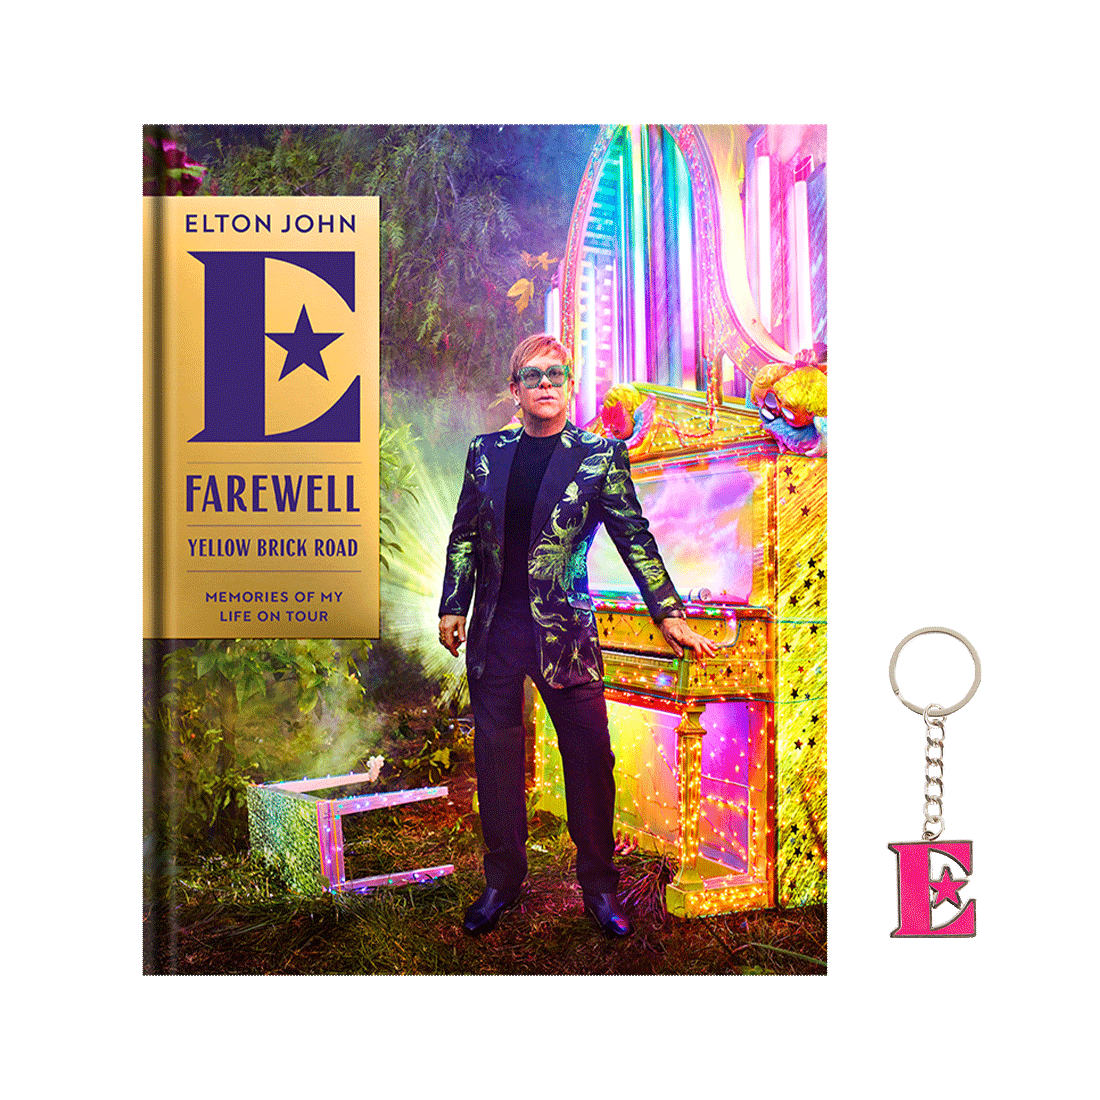 Farewell Yellow Brick Road: Memories Of My Life On Tour” book plus FREE Elton E* surprise colour keychain